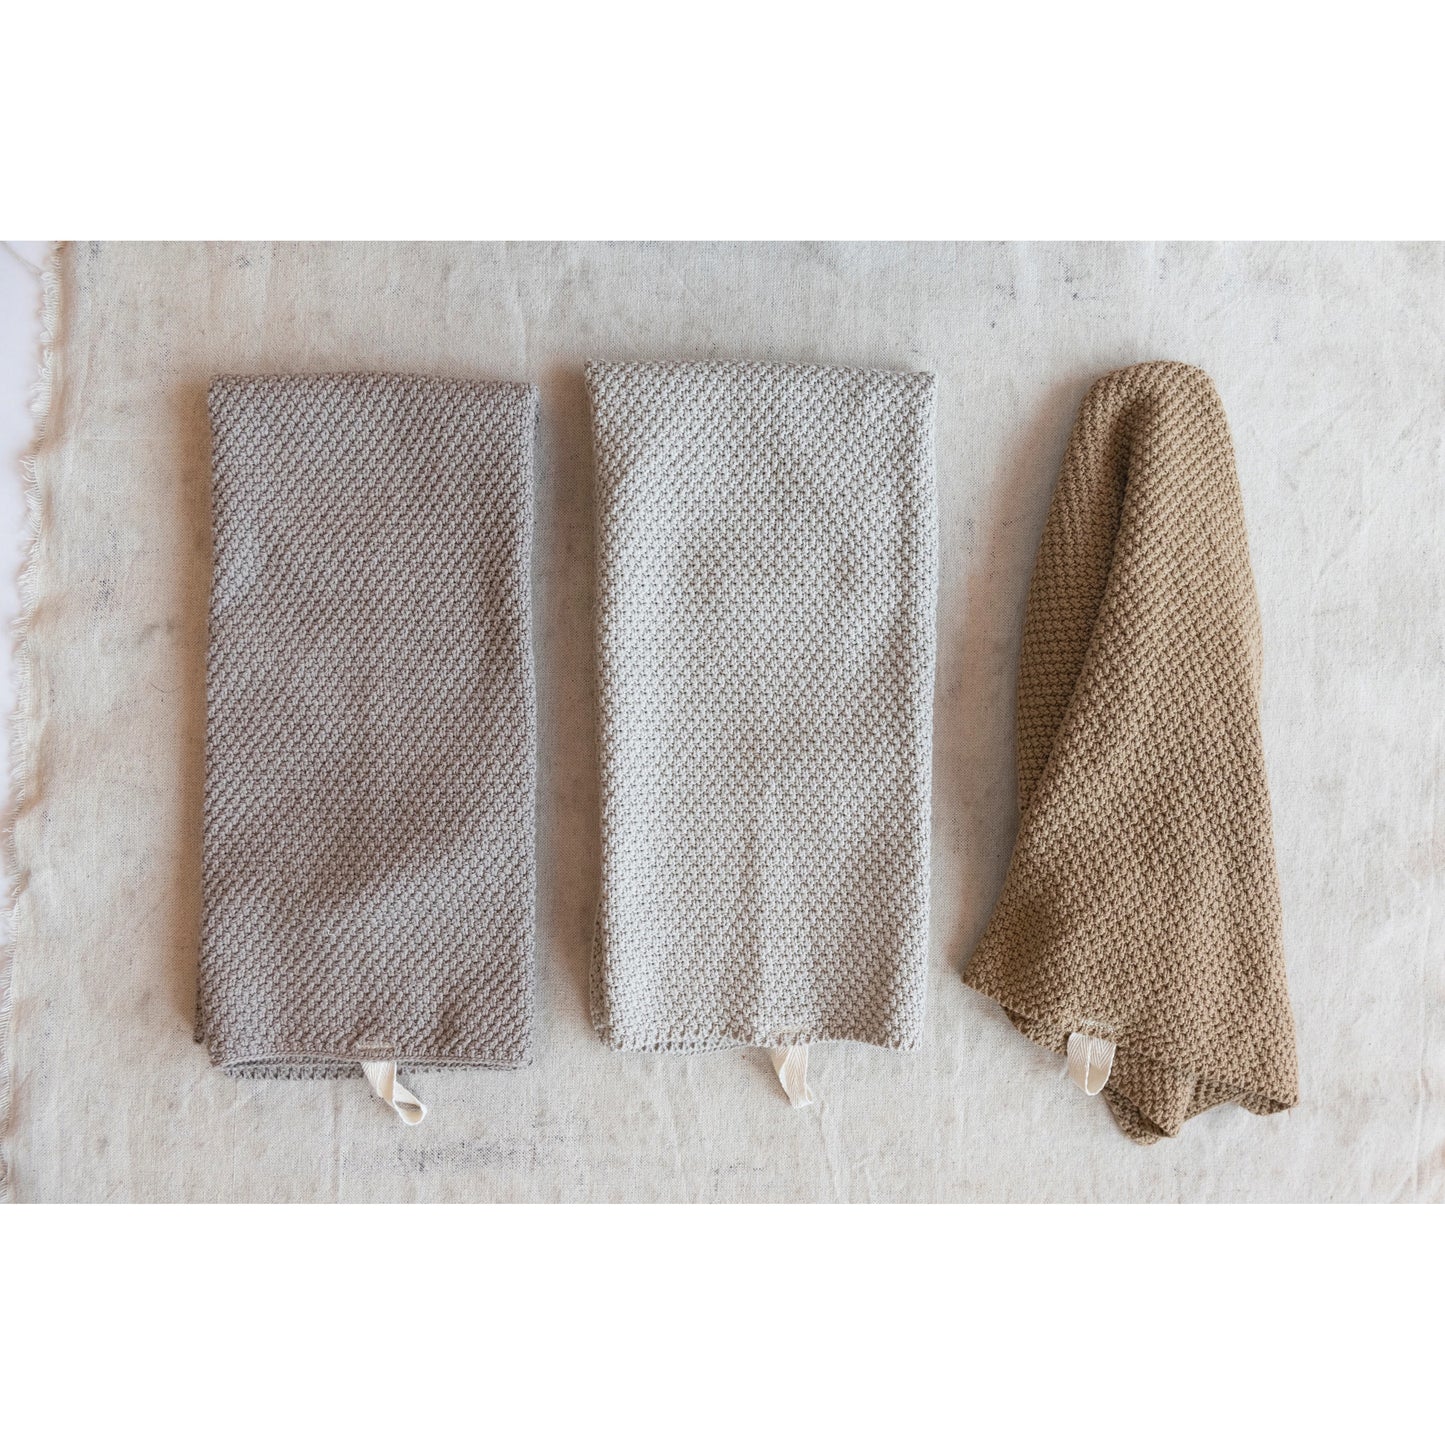 Cotton Knit Tea Towels, 3 Colors